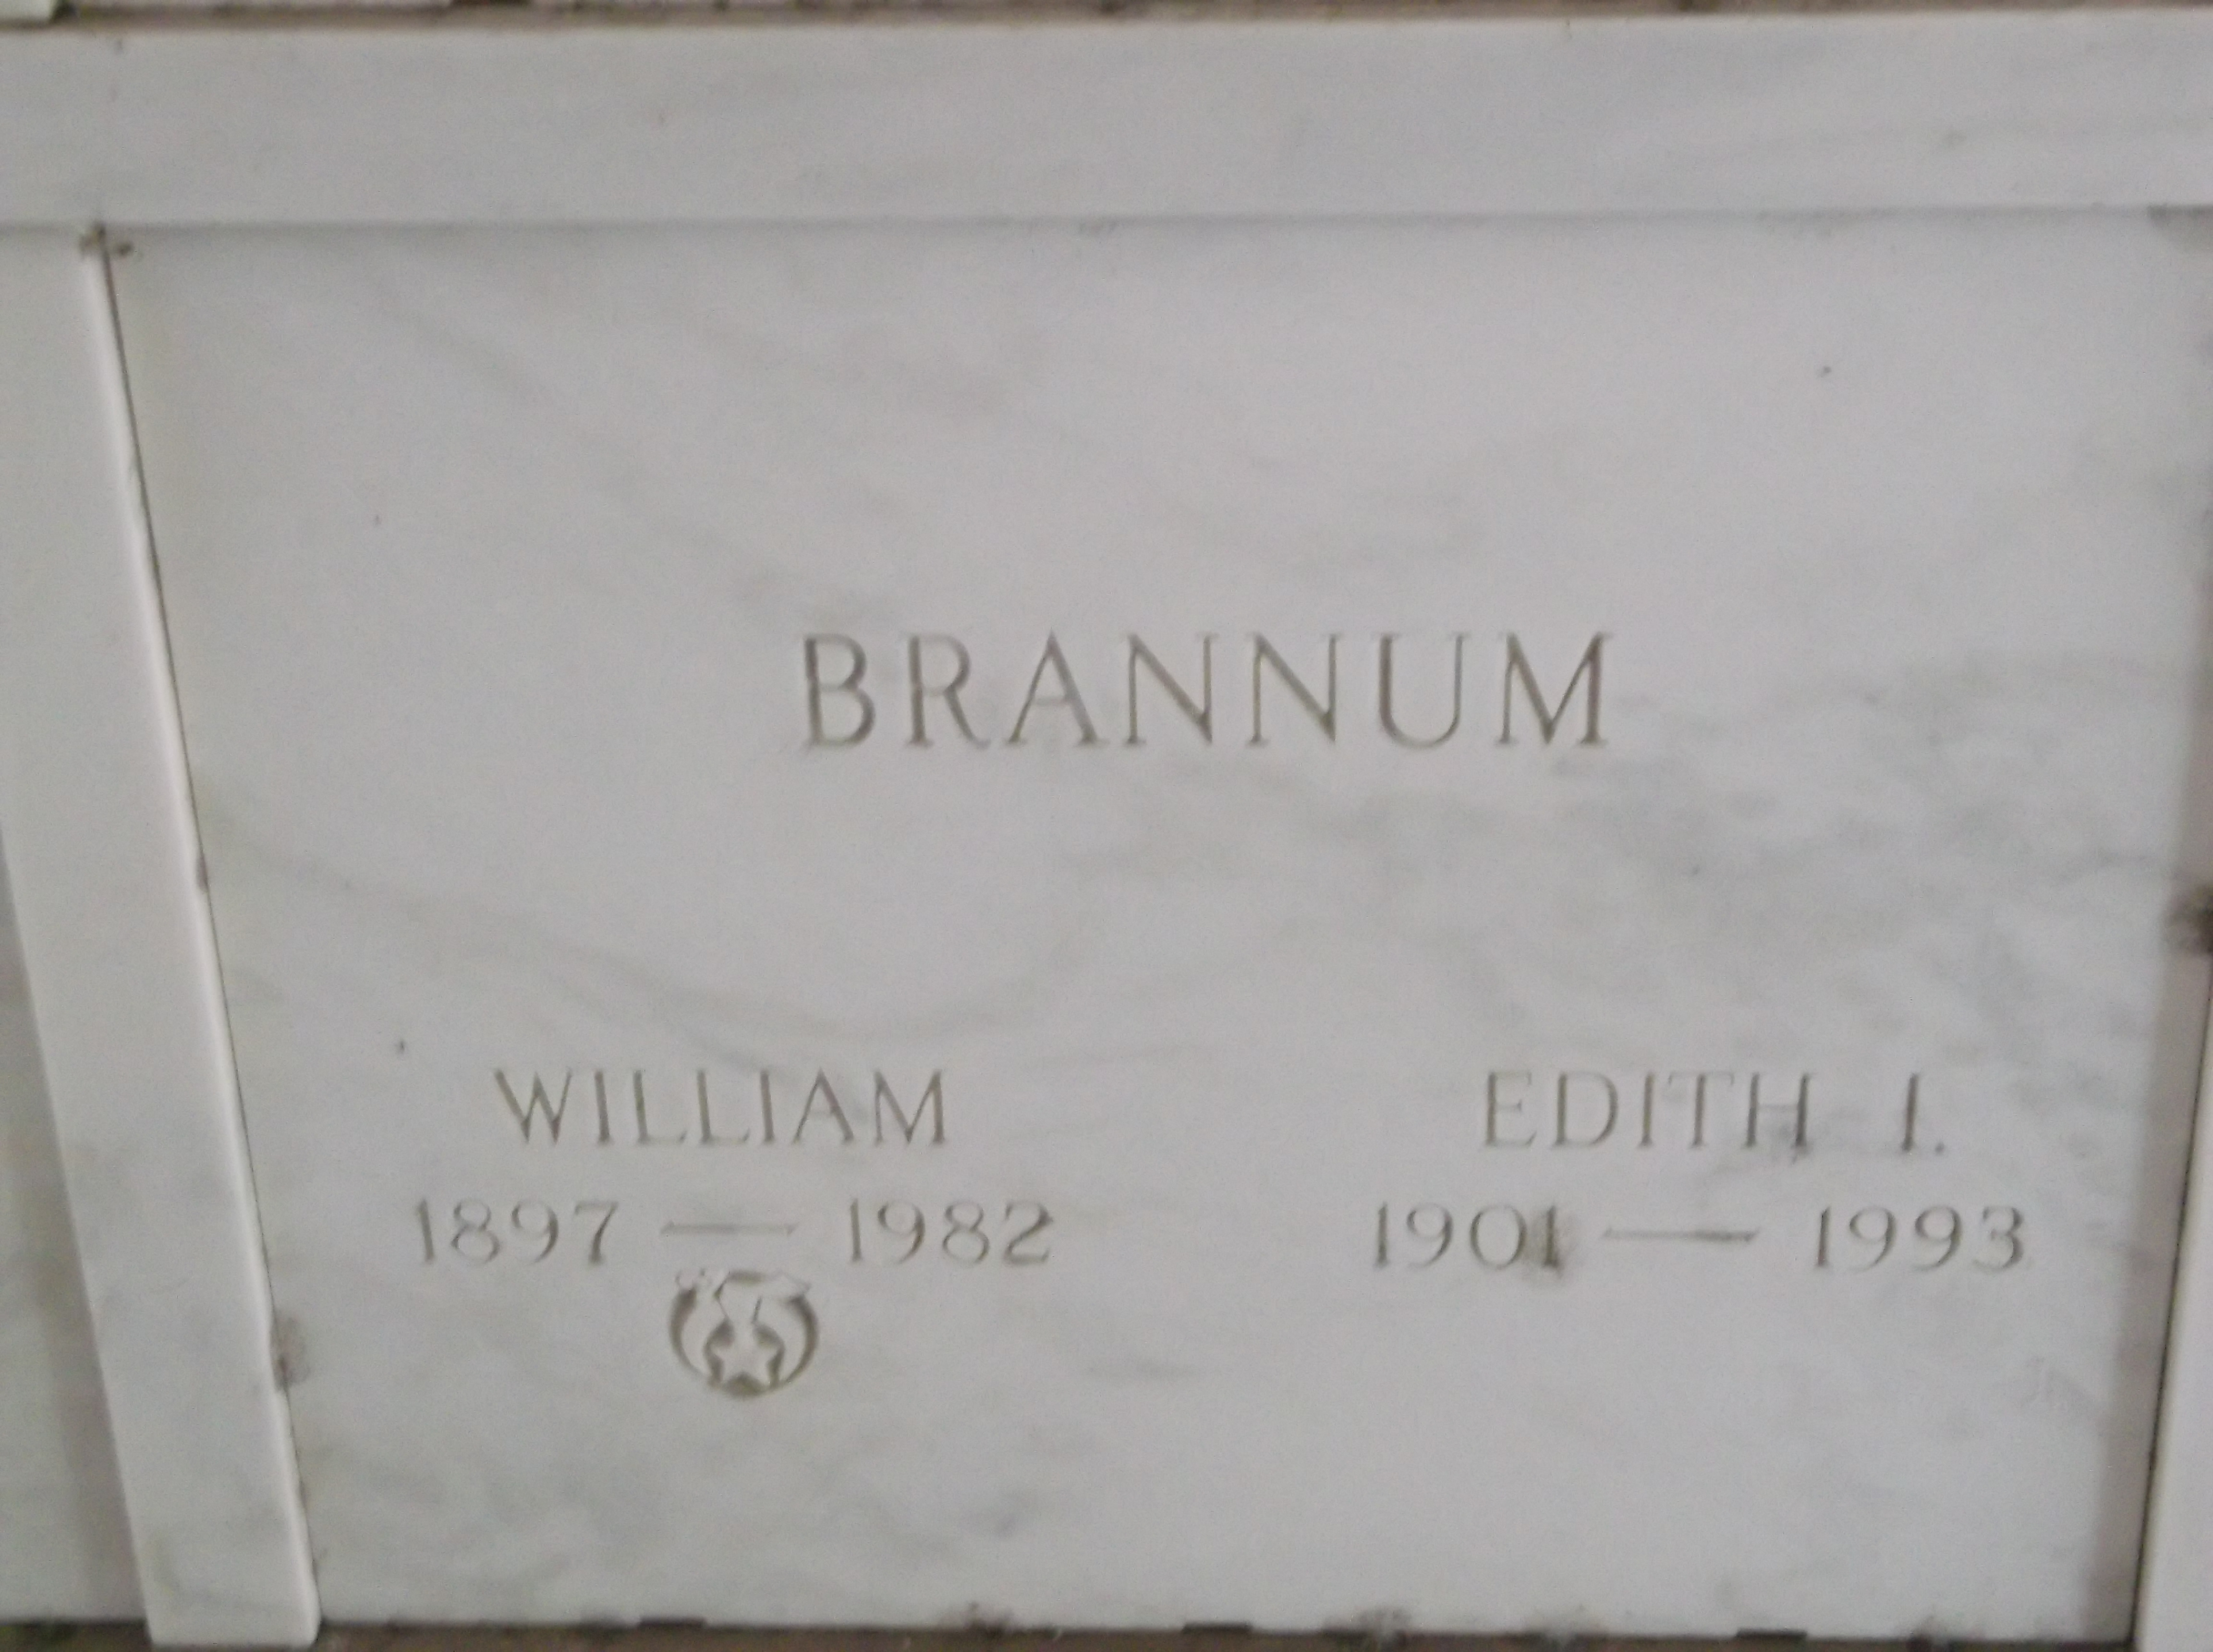 William Brannum